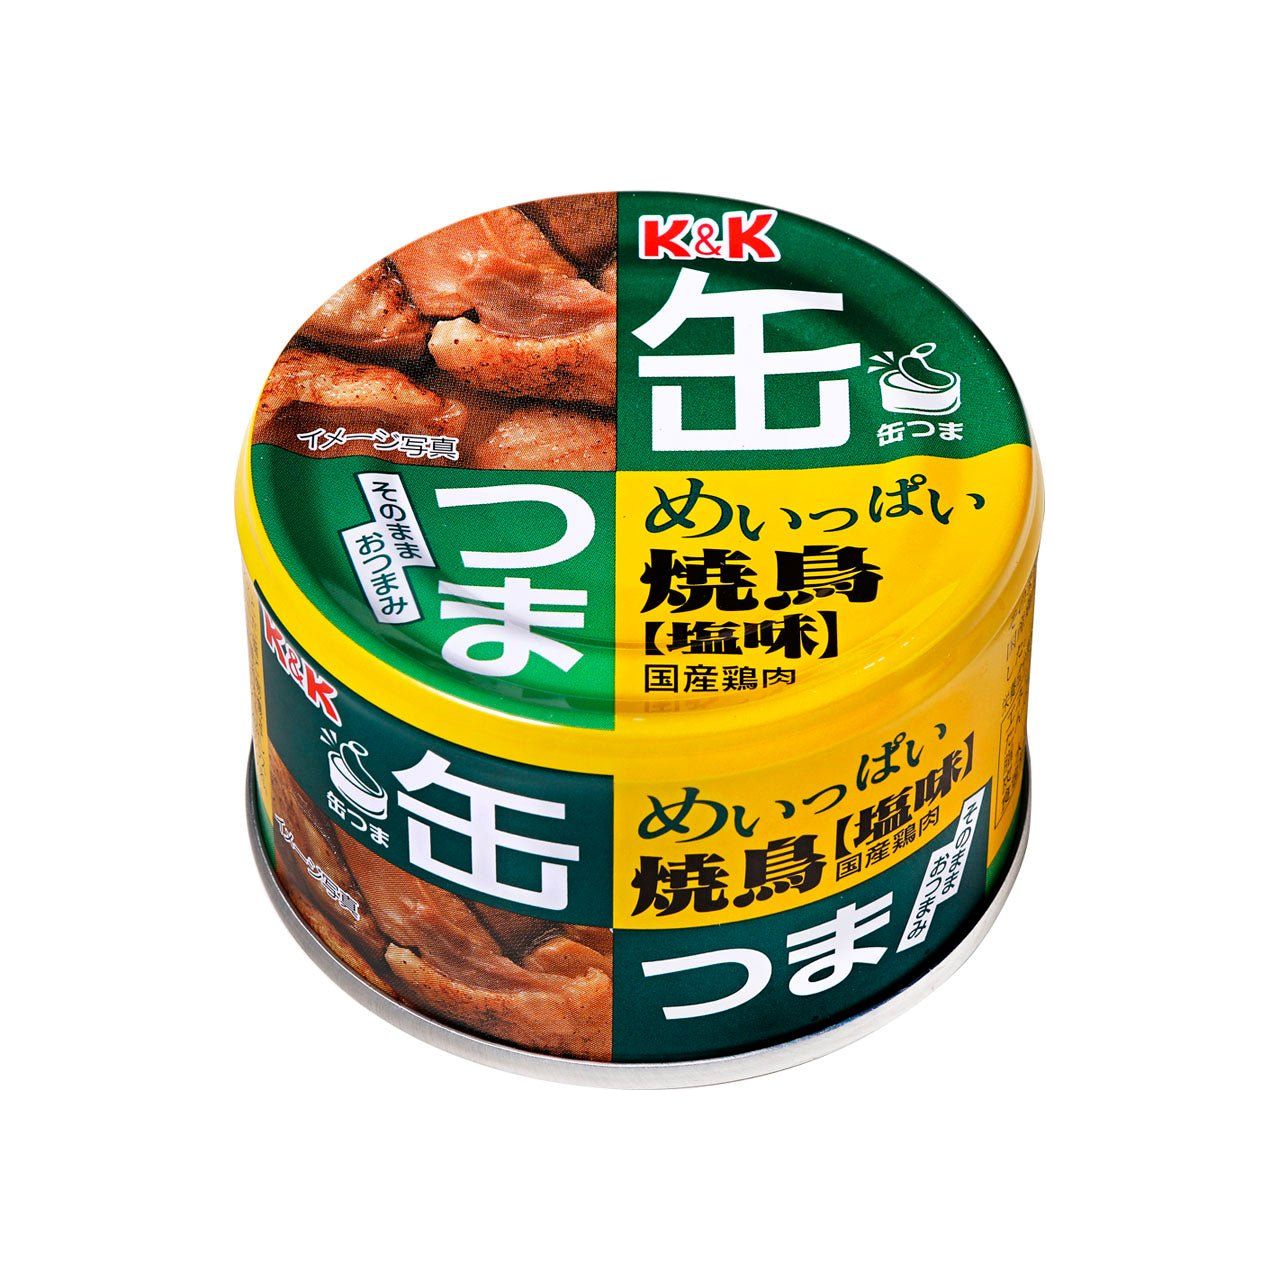 K & k canes tsumame beaucoup de goûts de sel yakitori